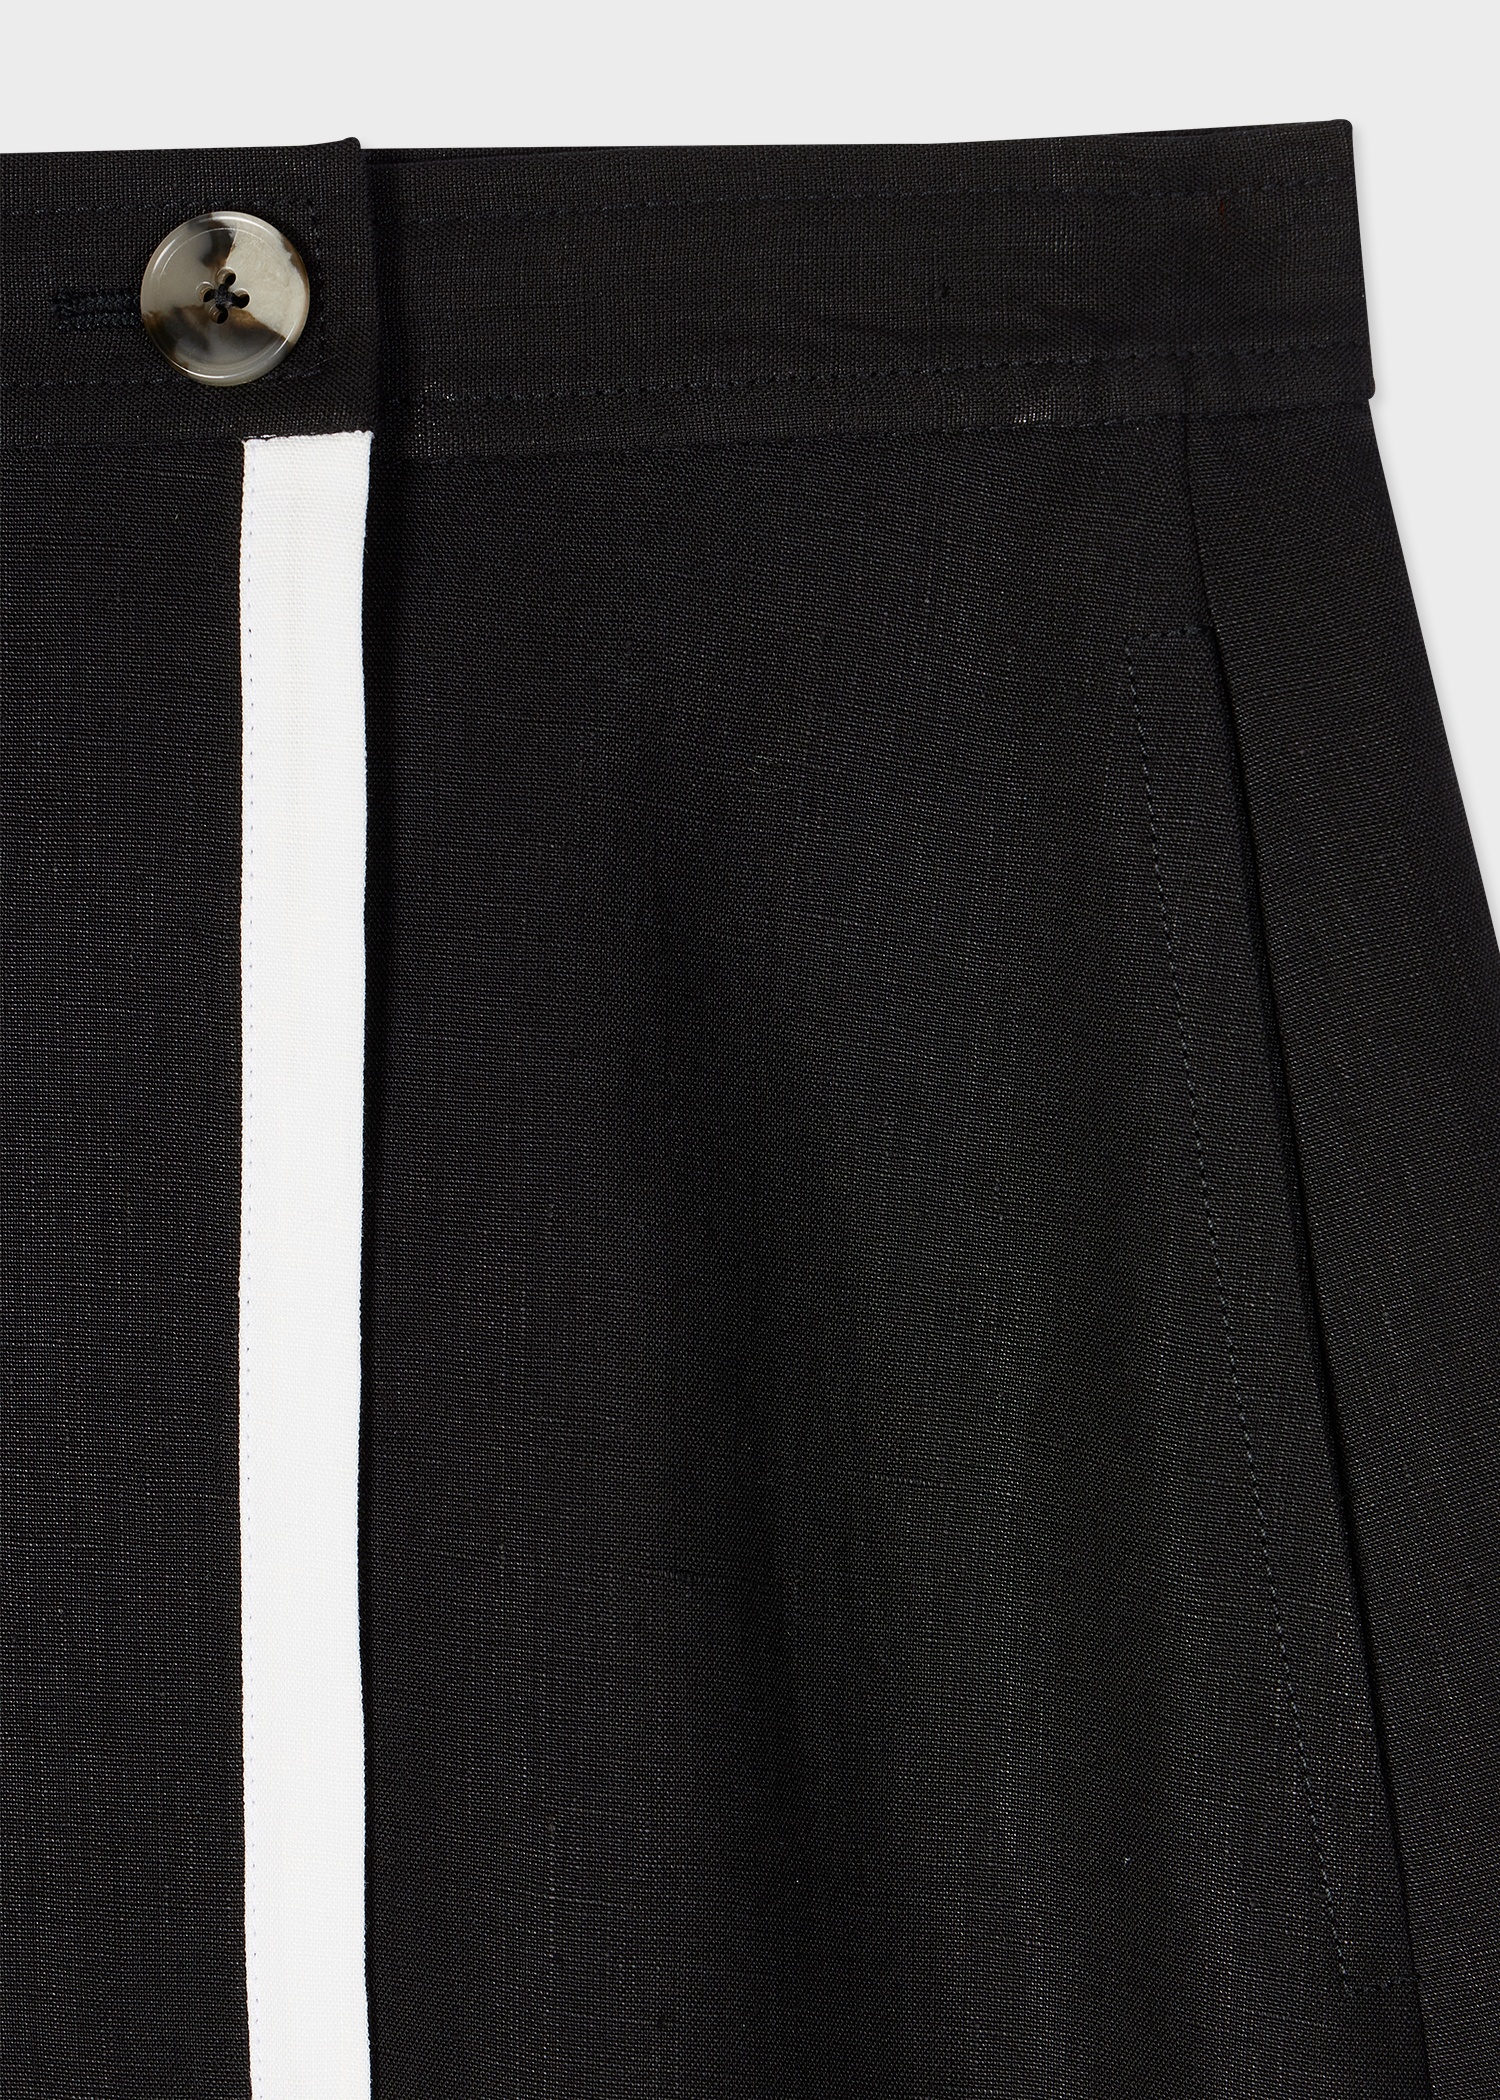 Women's Black Linen Wrap Skirt - 2